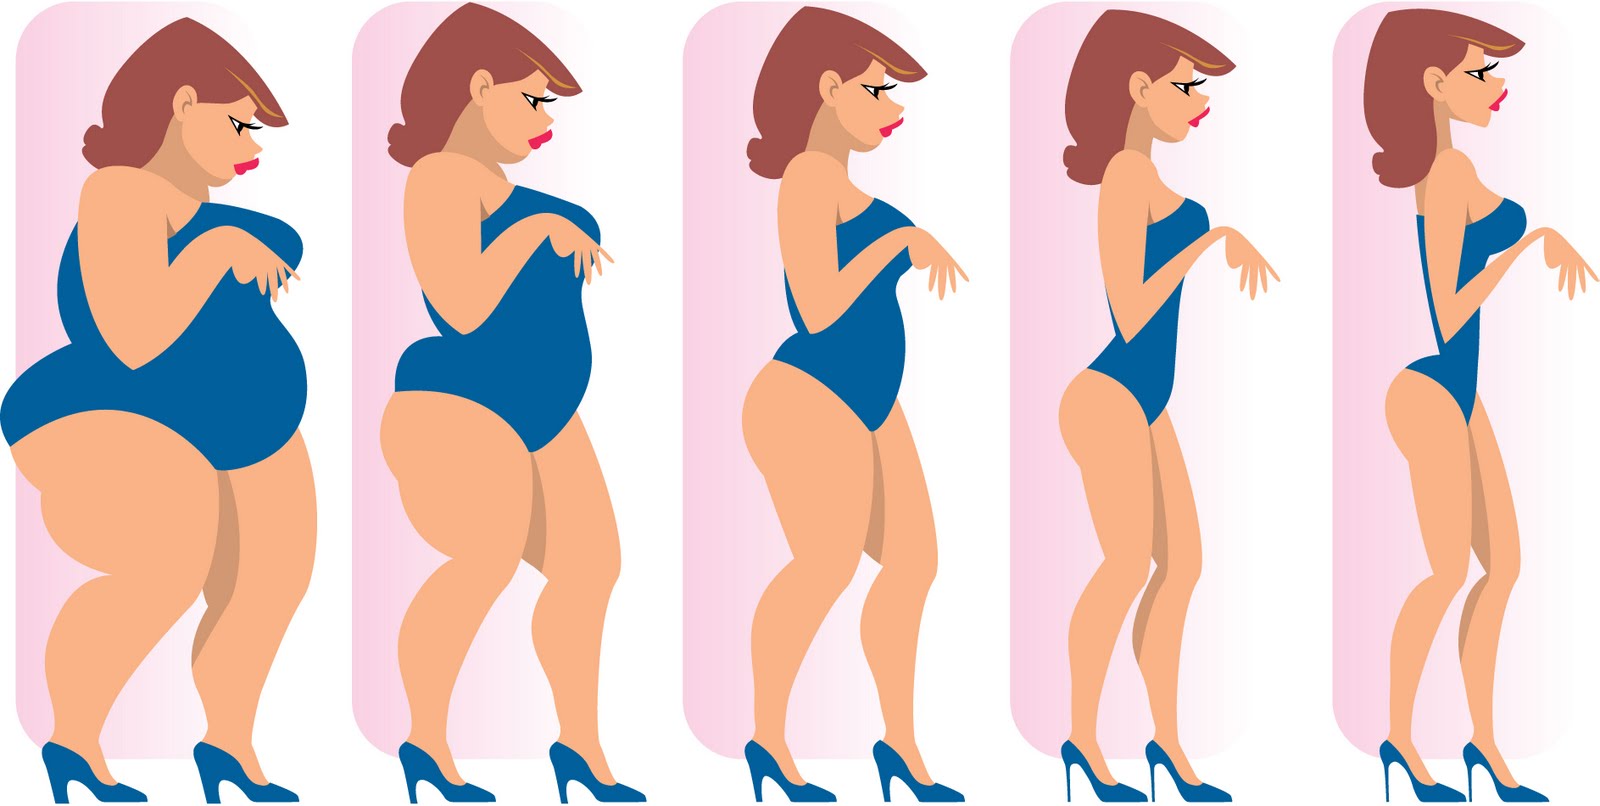 Egészség, hatékony zsírégetés, tartós fogyás, testzsírszázalék, BMI index